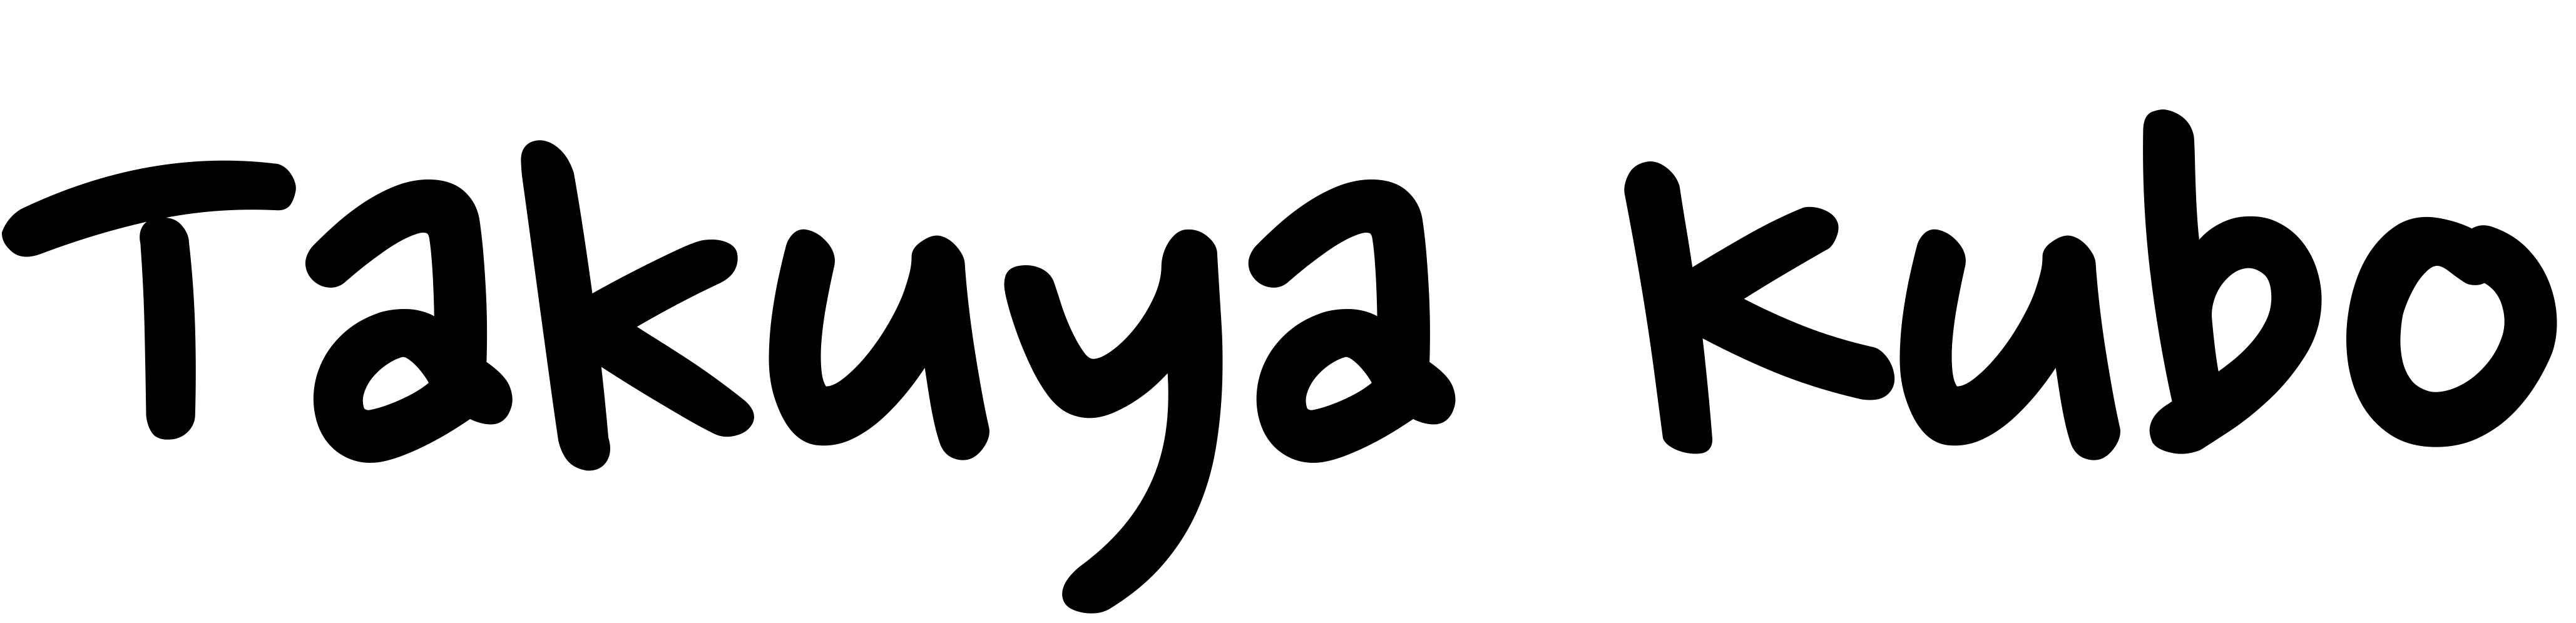 勉強会資料（2020年10月〜2021年3月） logo